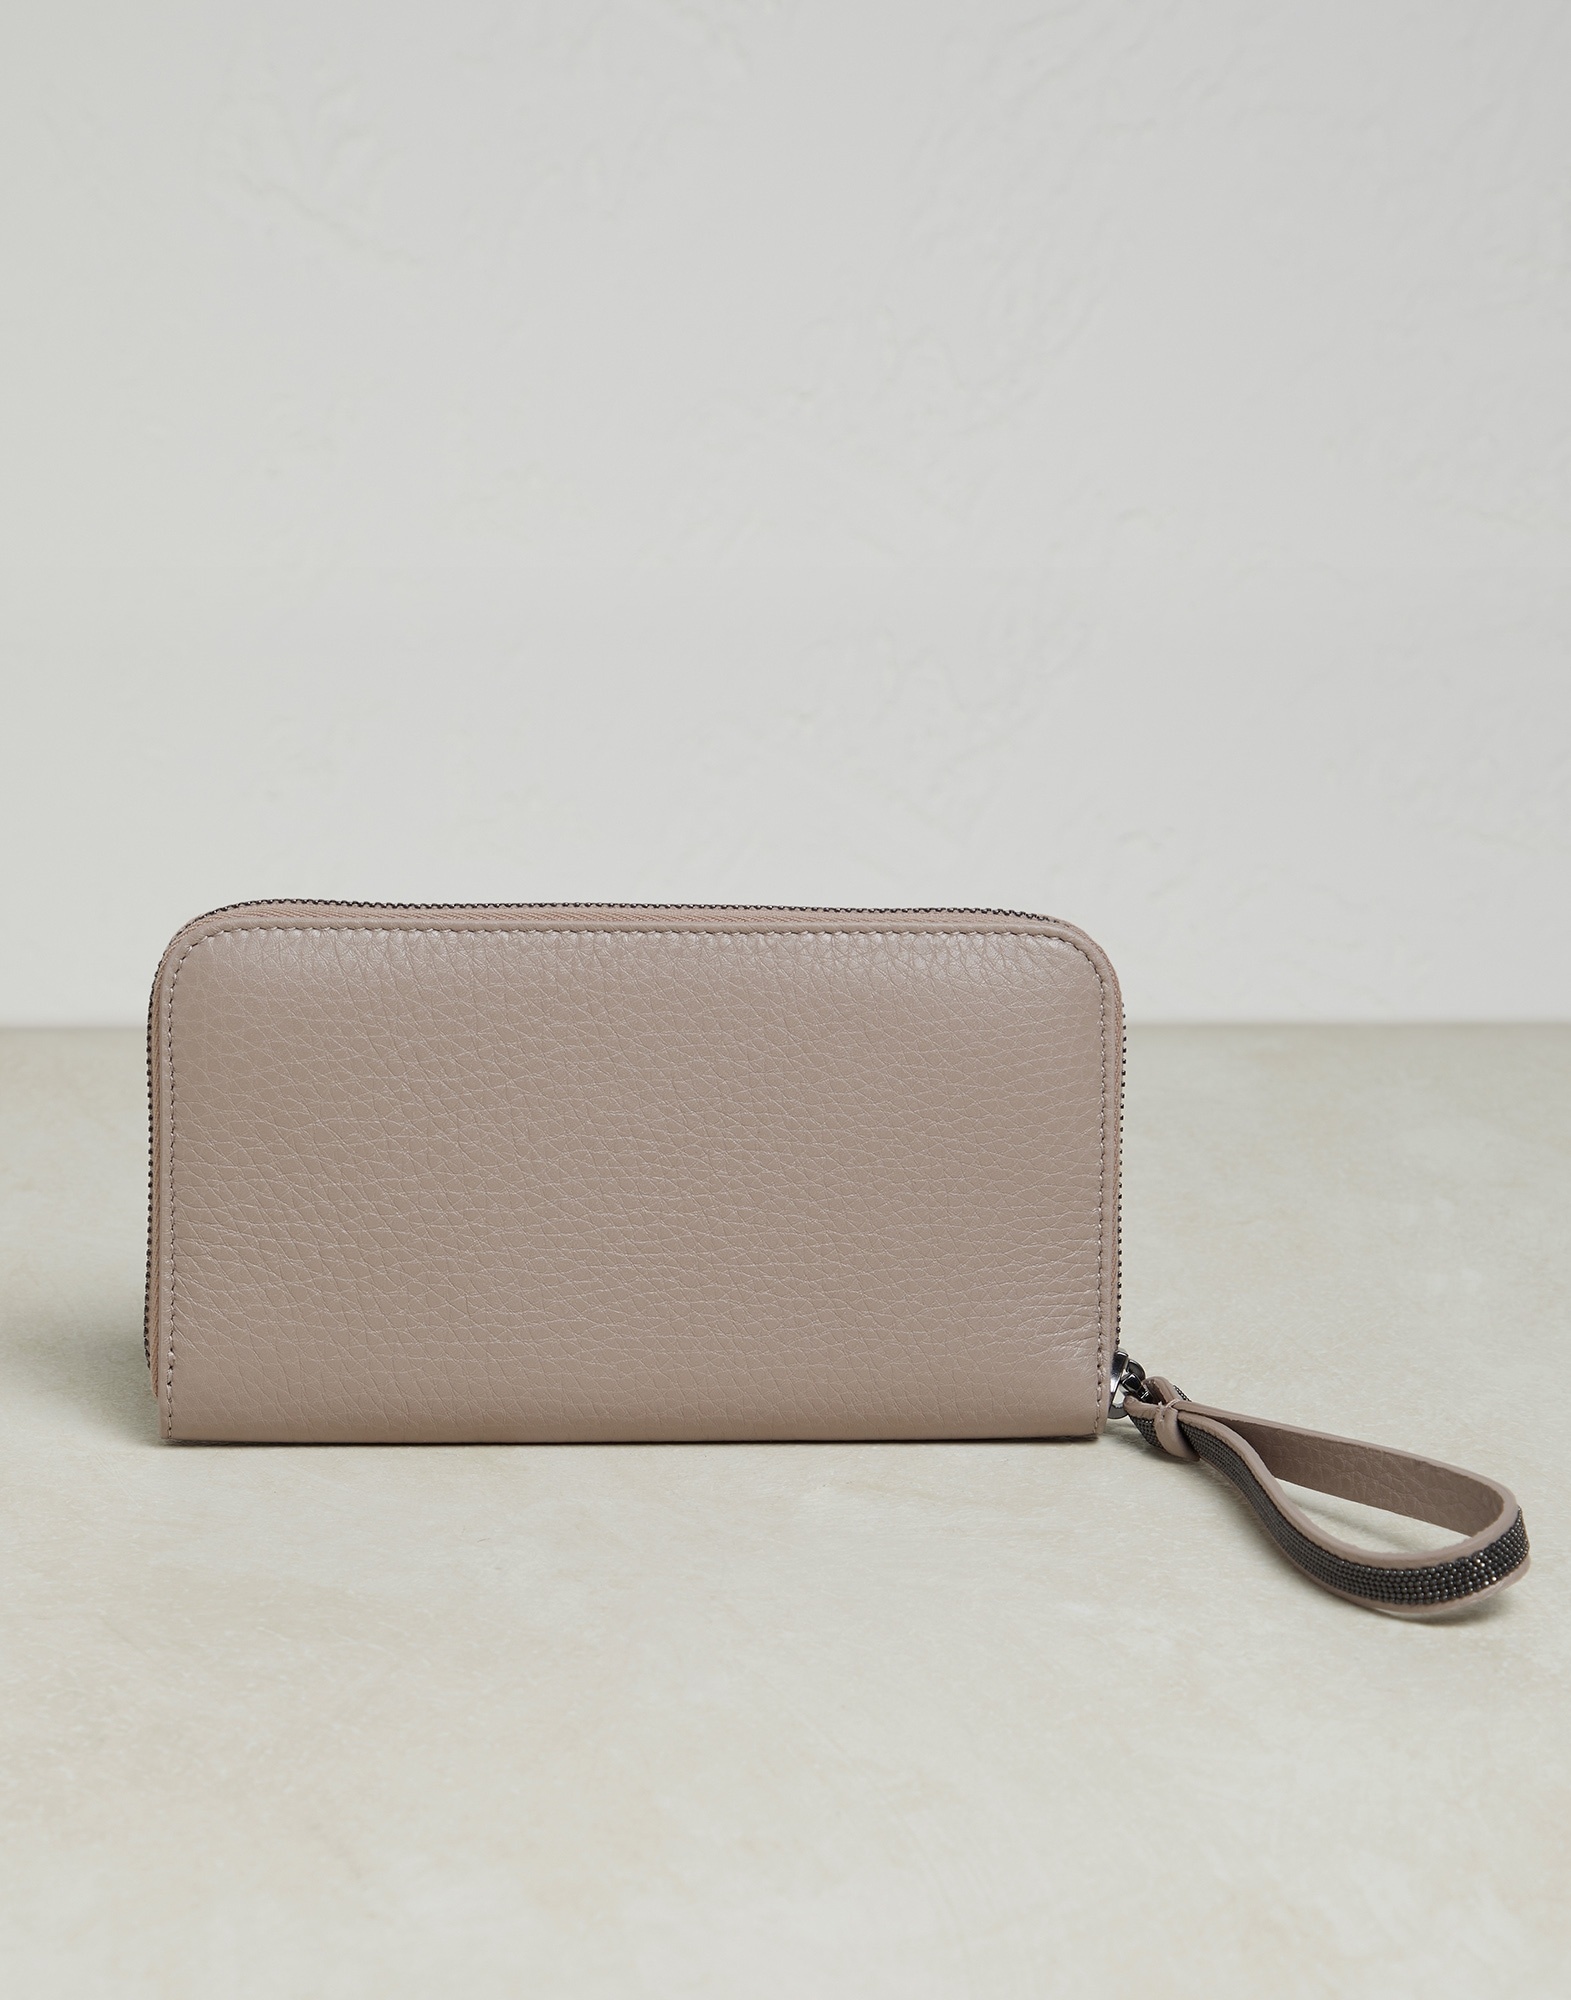 Texture calfskin wallet with precious zipper pull - 2